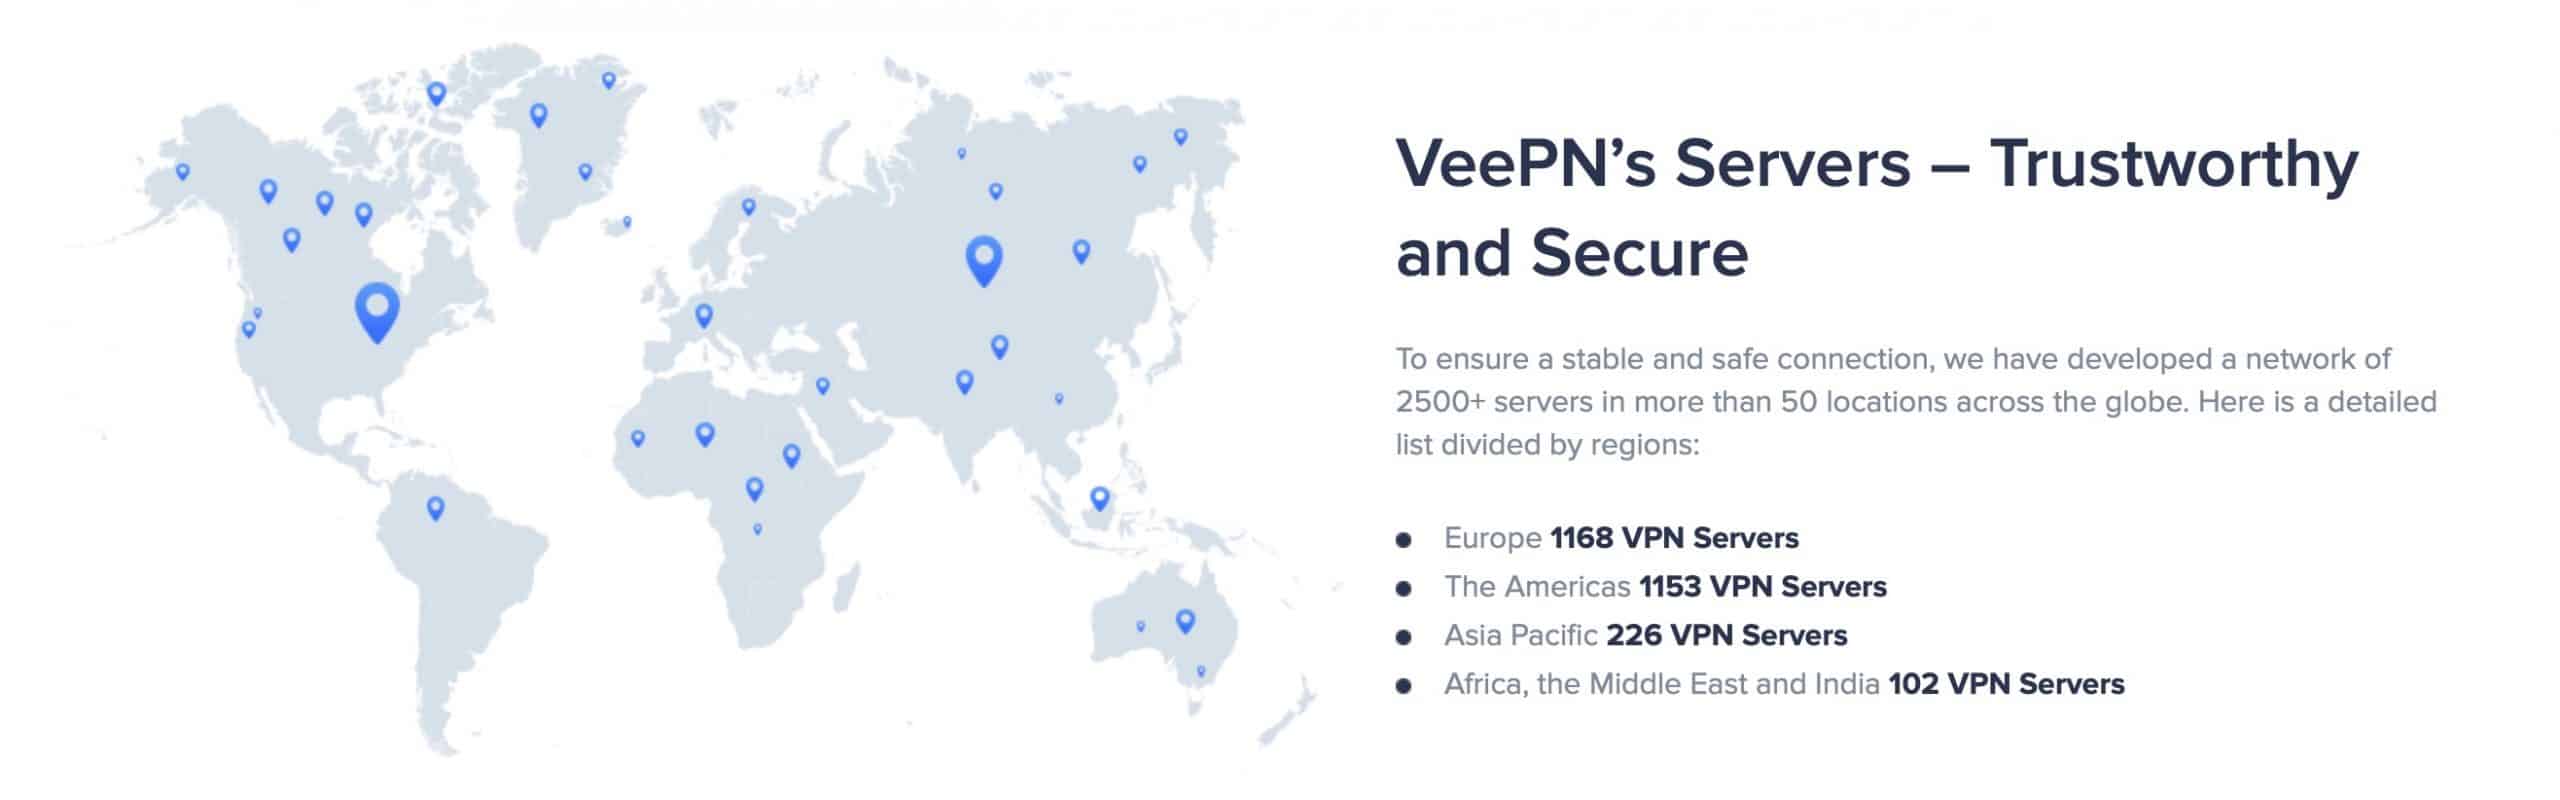 VeePN - Servers